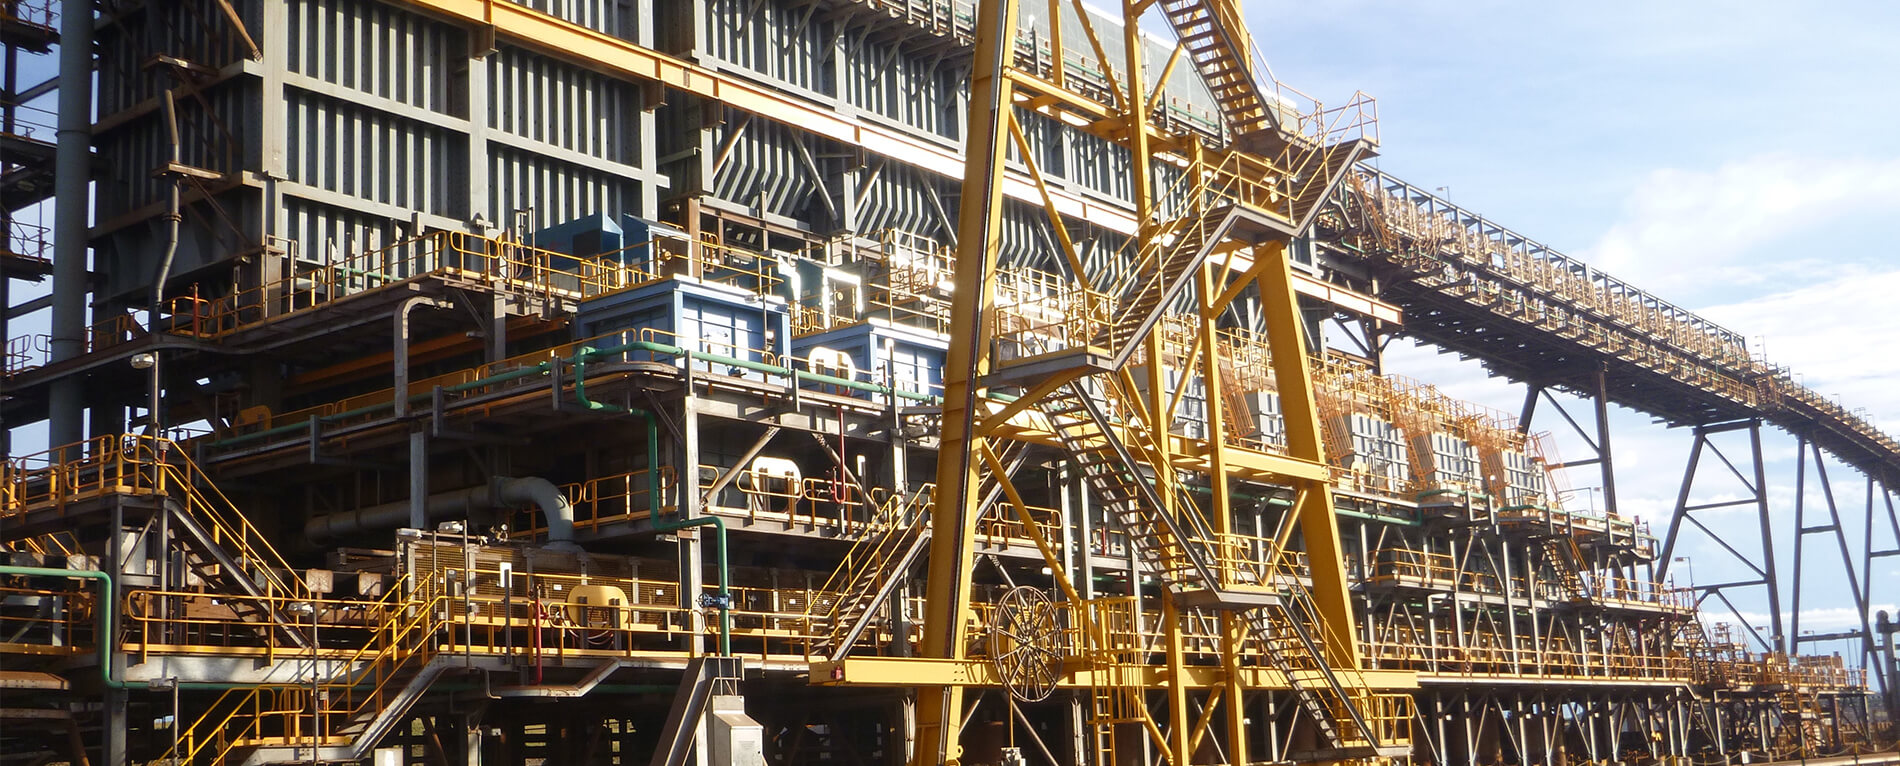 JOEST Vibration Technology utilised in plant upgrade for Pilbara iron ore producer